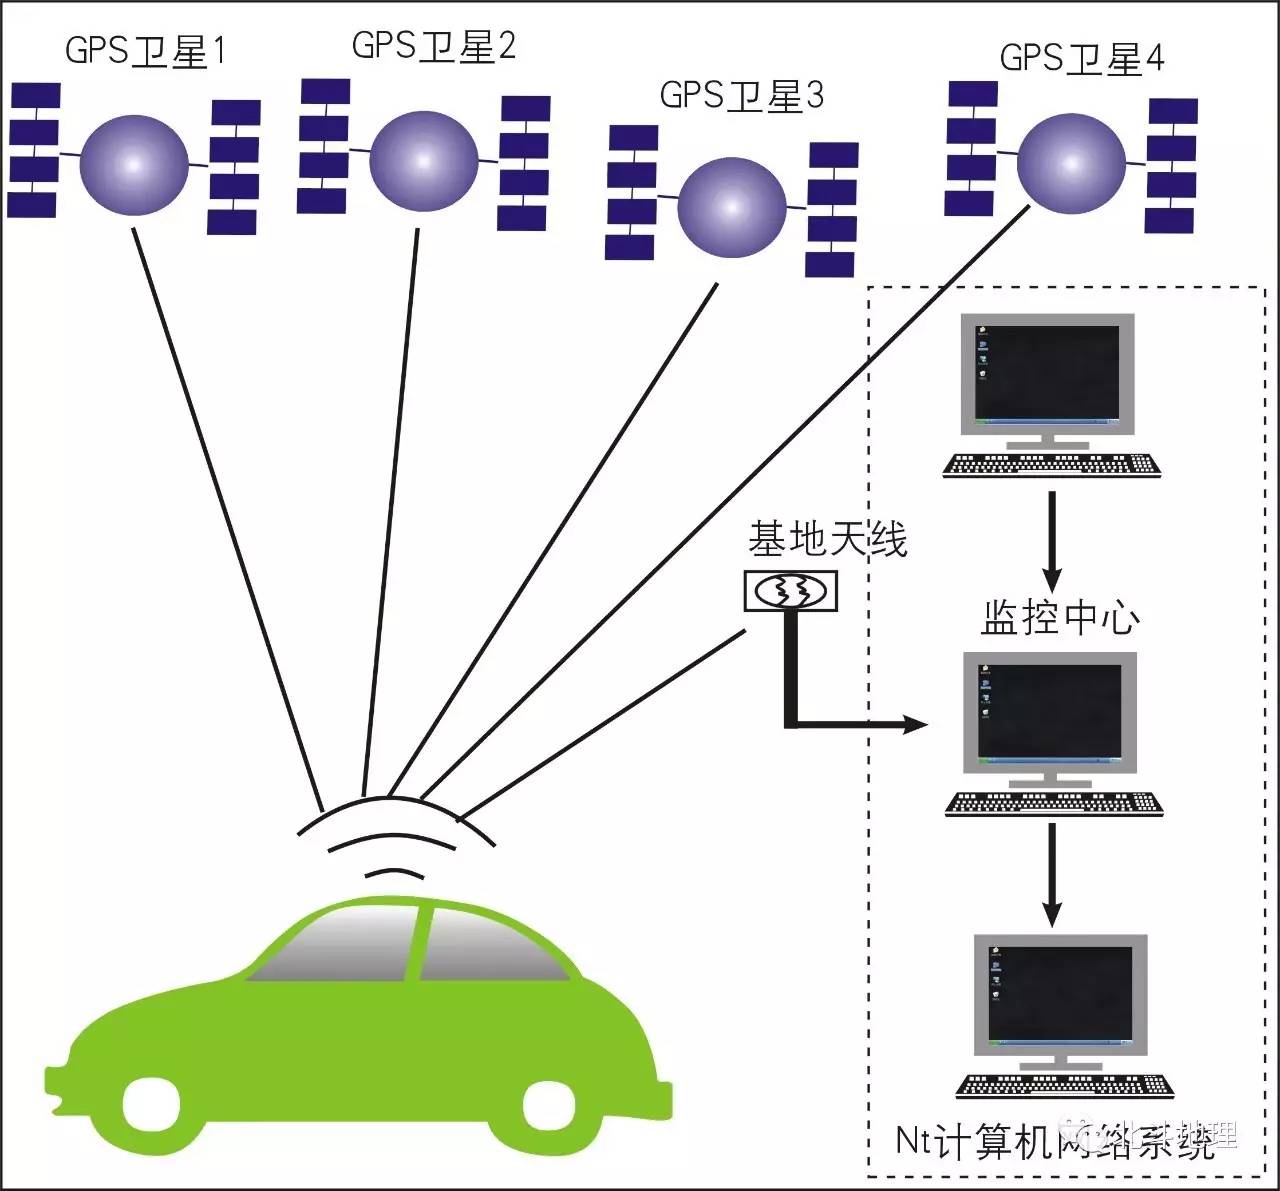 出租车上应用gps技术的原理在智能交通系统中,车辆通过车载的gps,来为